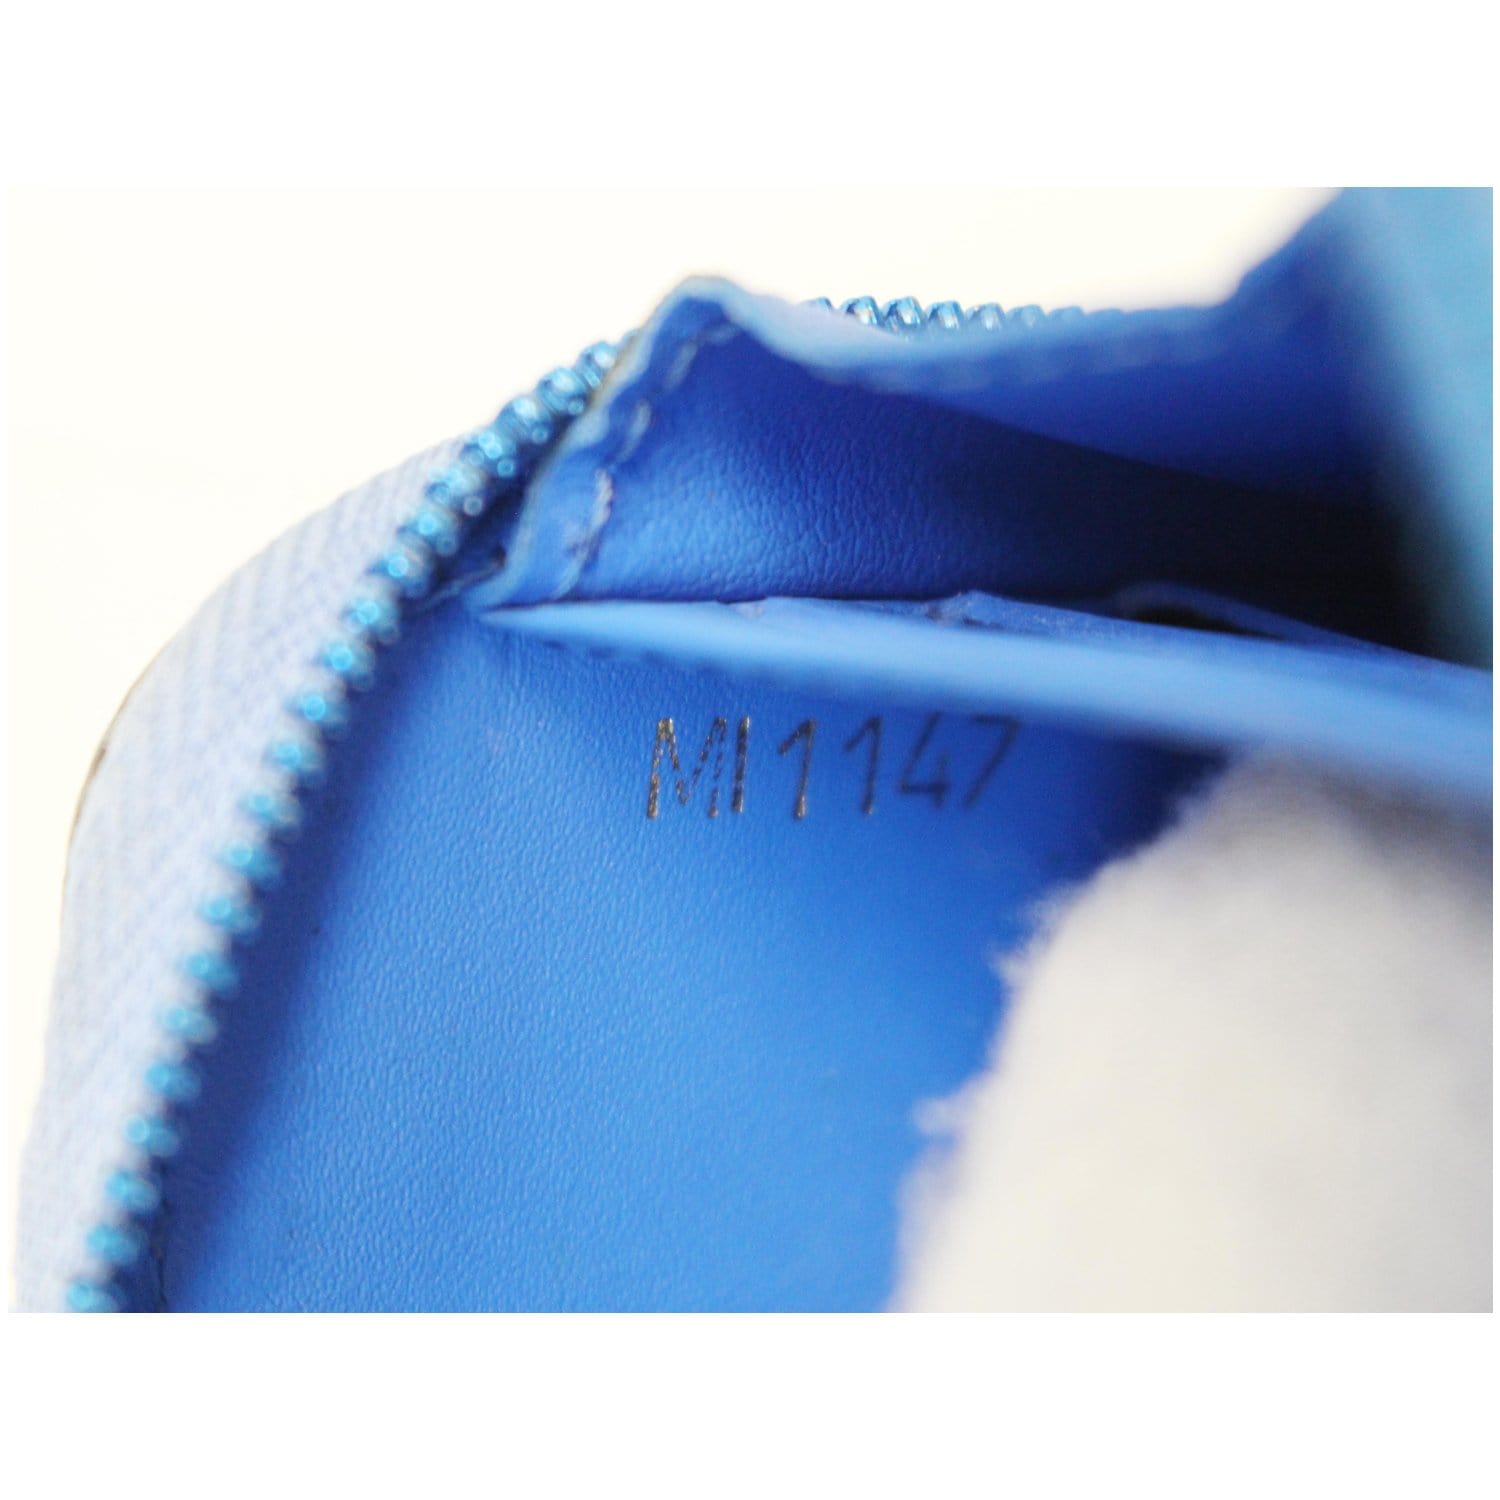 Louis Vuitton Zippy Wallet Peter Paul Rubens Blue